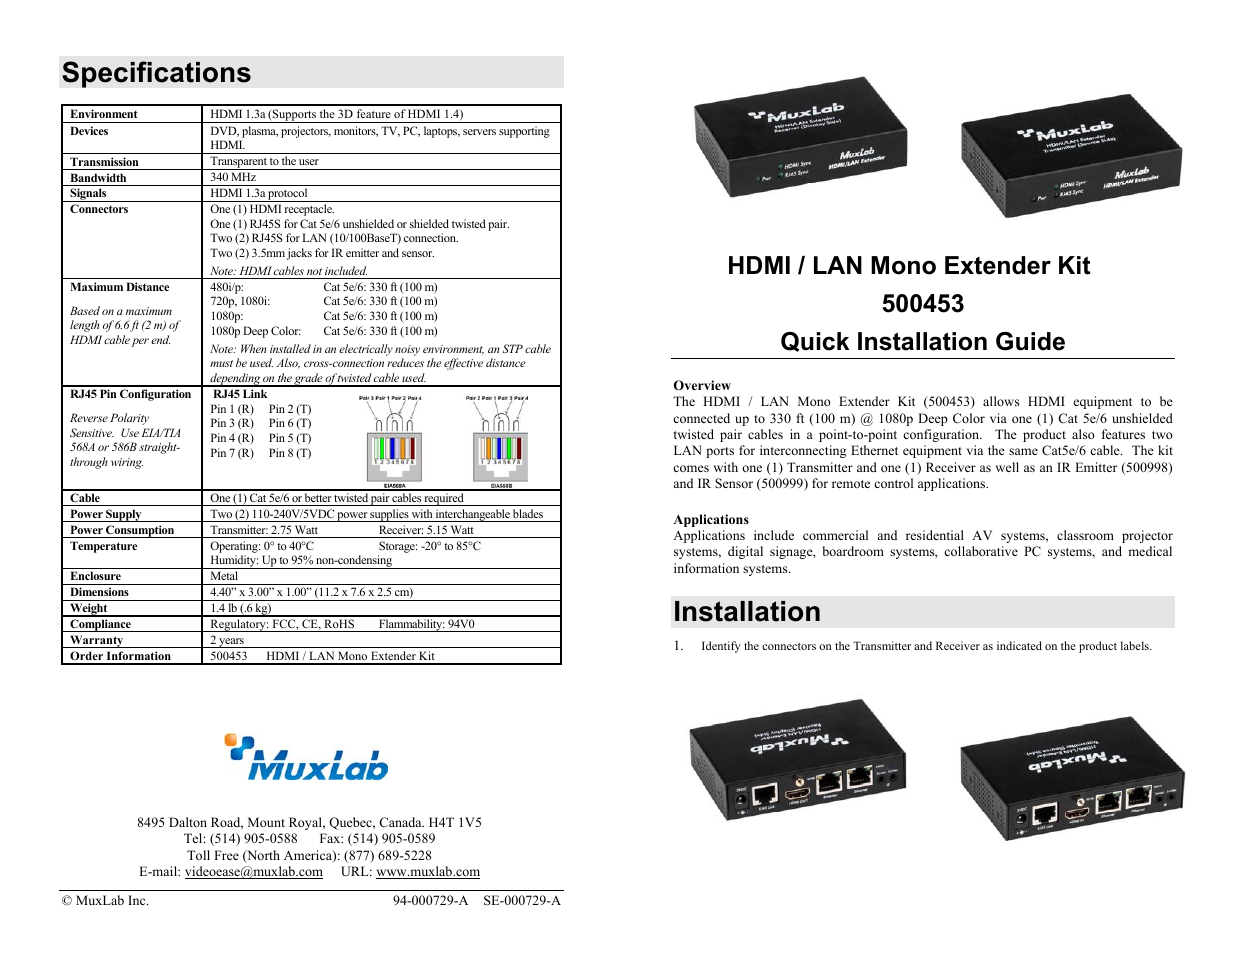 HDMI/LAN Mono Extender Kit